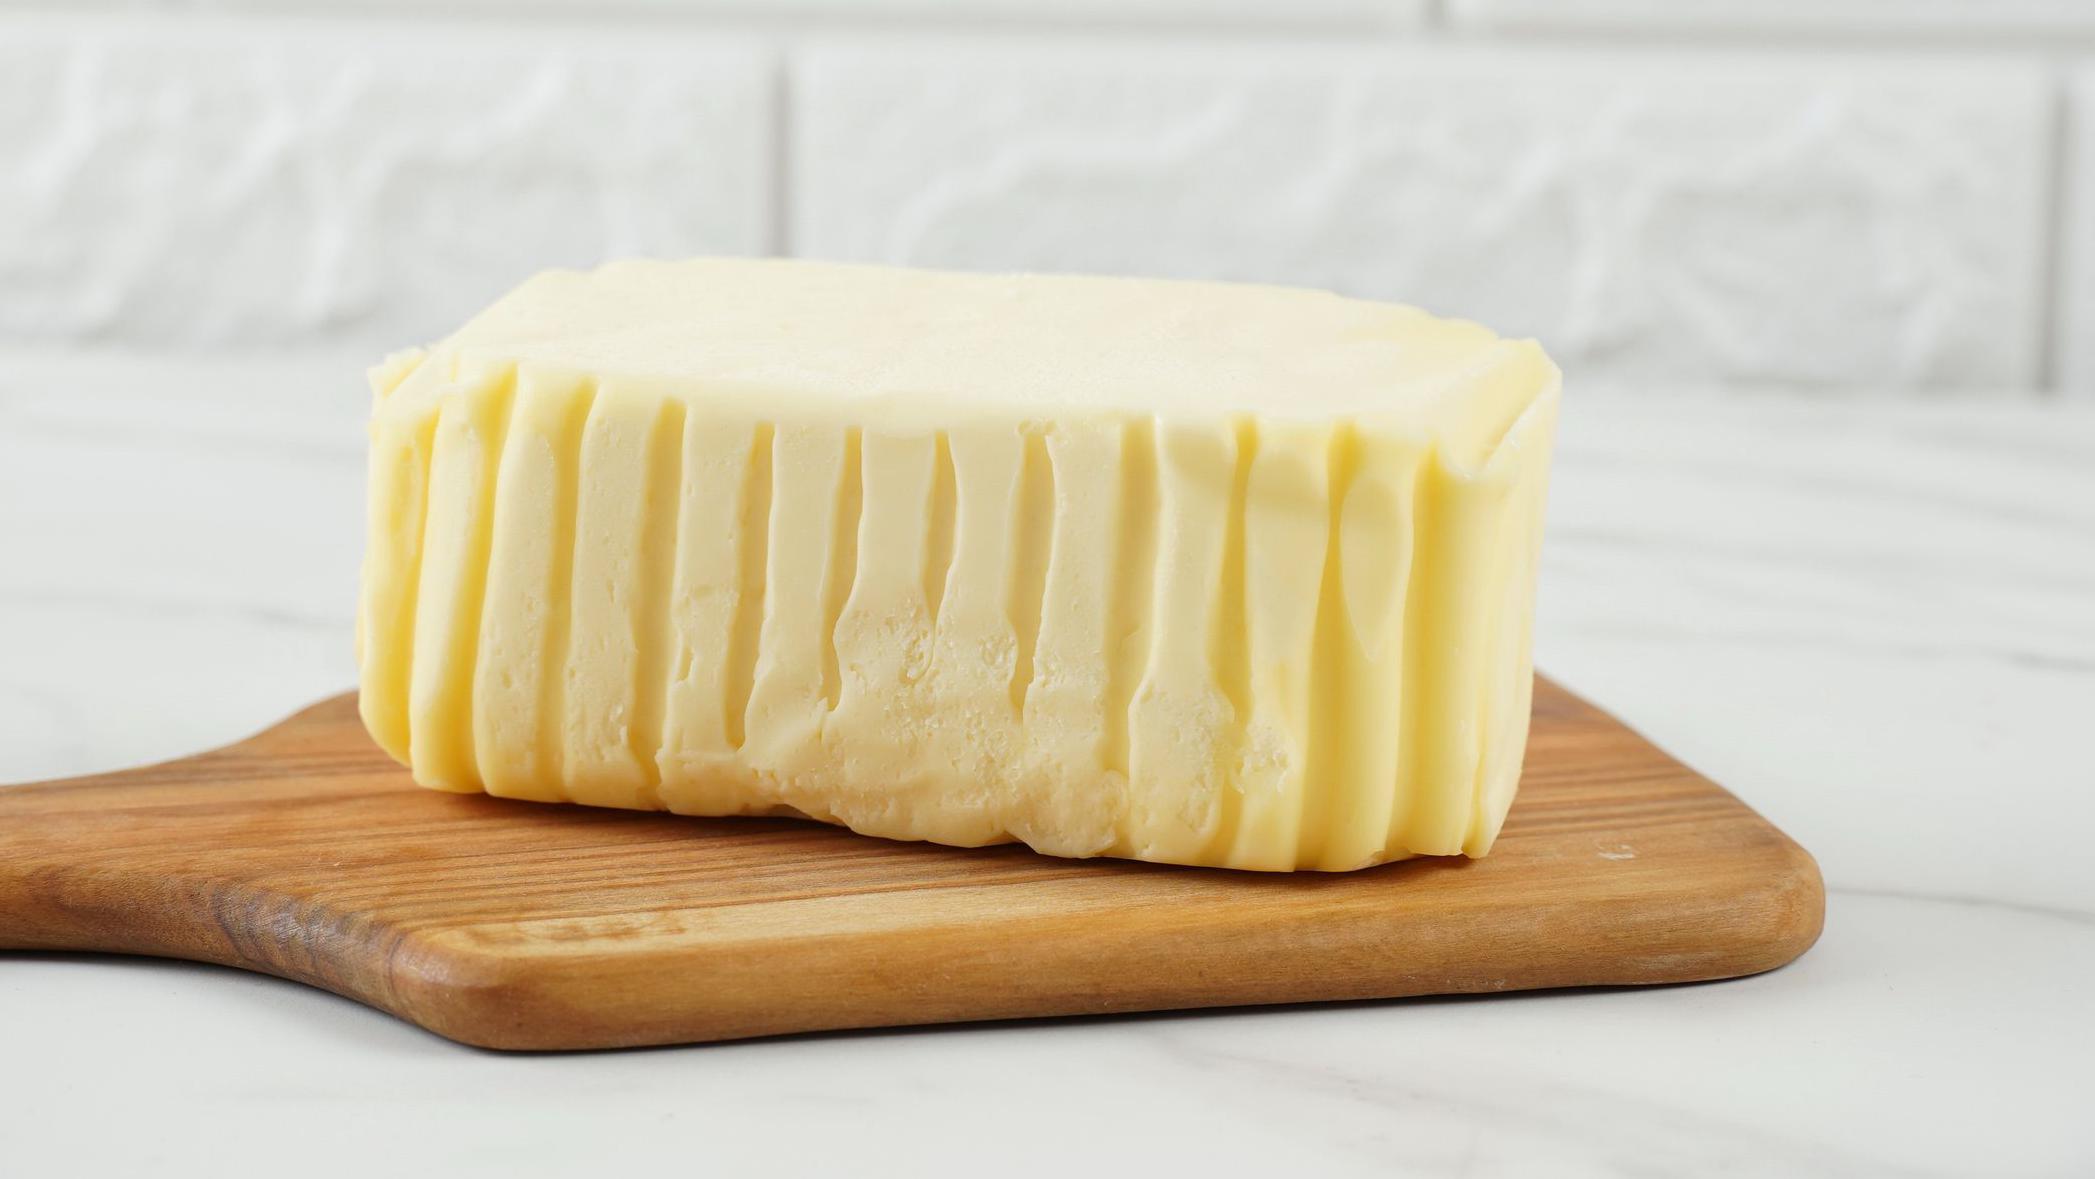 mantequilla o margarina: ¿cuál es más saludable?